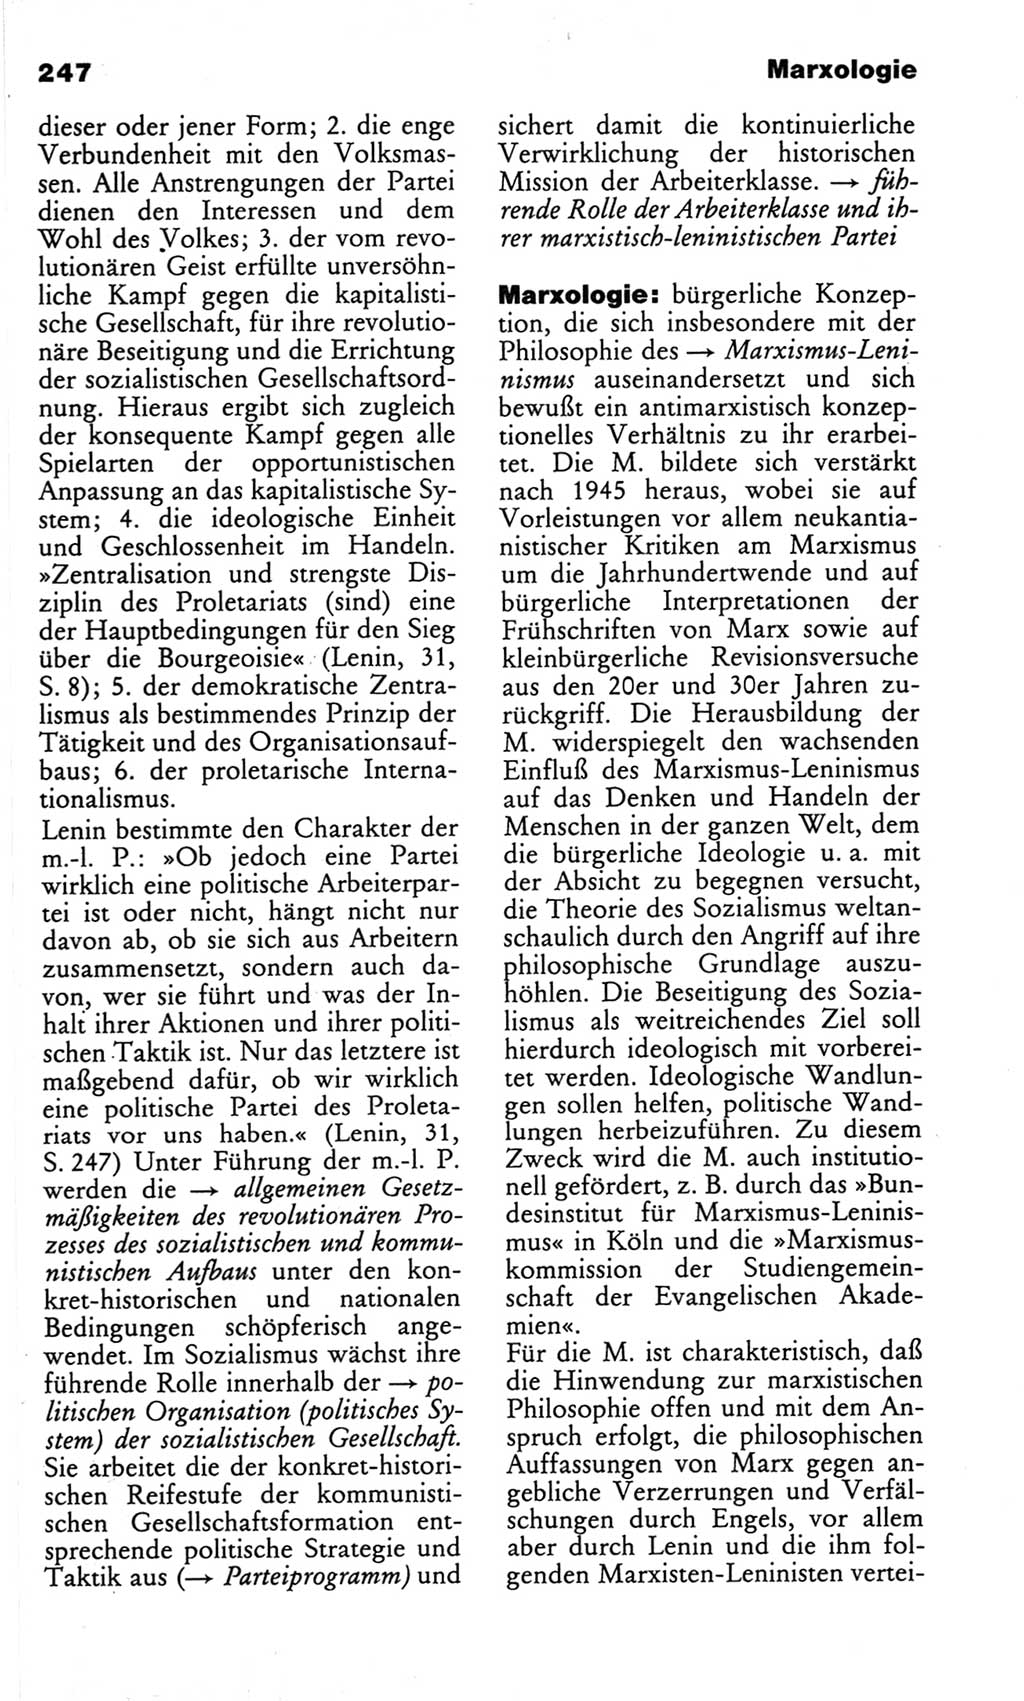 Wörterbuch des wissenschaftlichen Kommunismus [Deutsche Demokratische Republik (DDR)] 1982, Seite 247 (Wb. wiss. Komm. DDR 1982, S. 247)